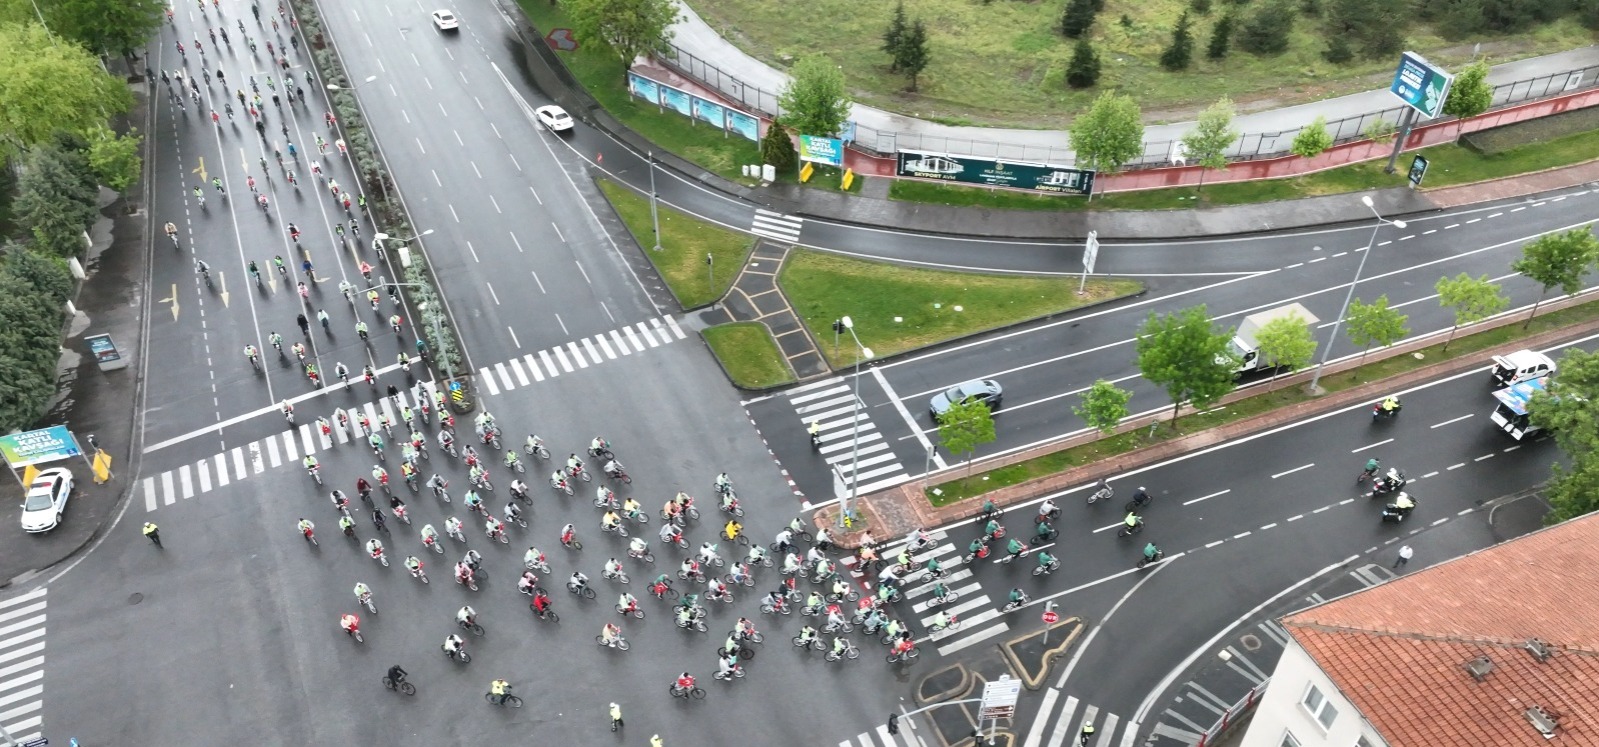 Kayseri’de edallar 11’inci Yeşilay Bisiklet Turu’nda çevrildi